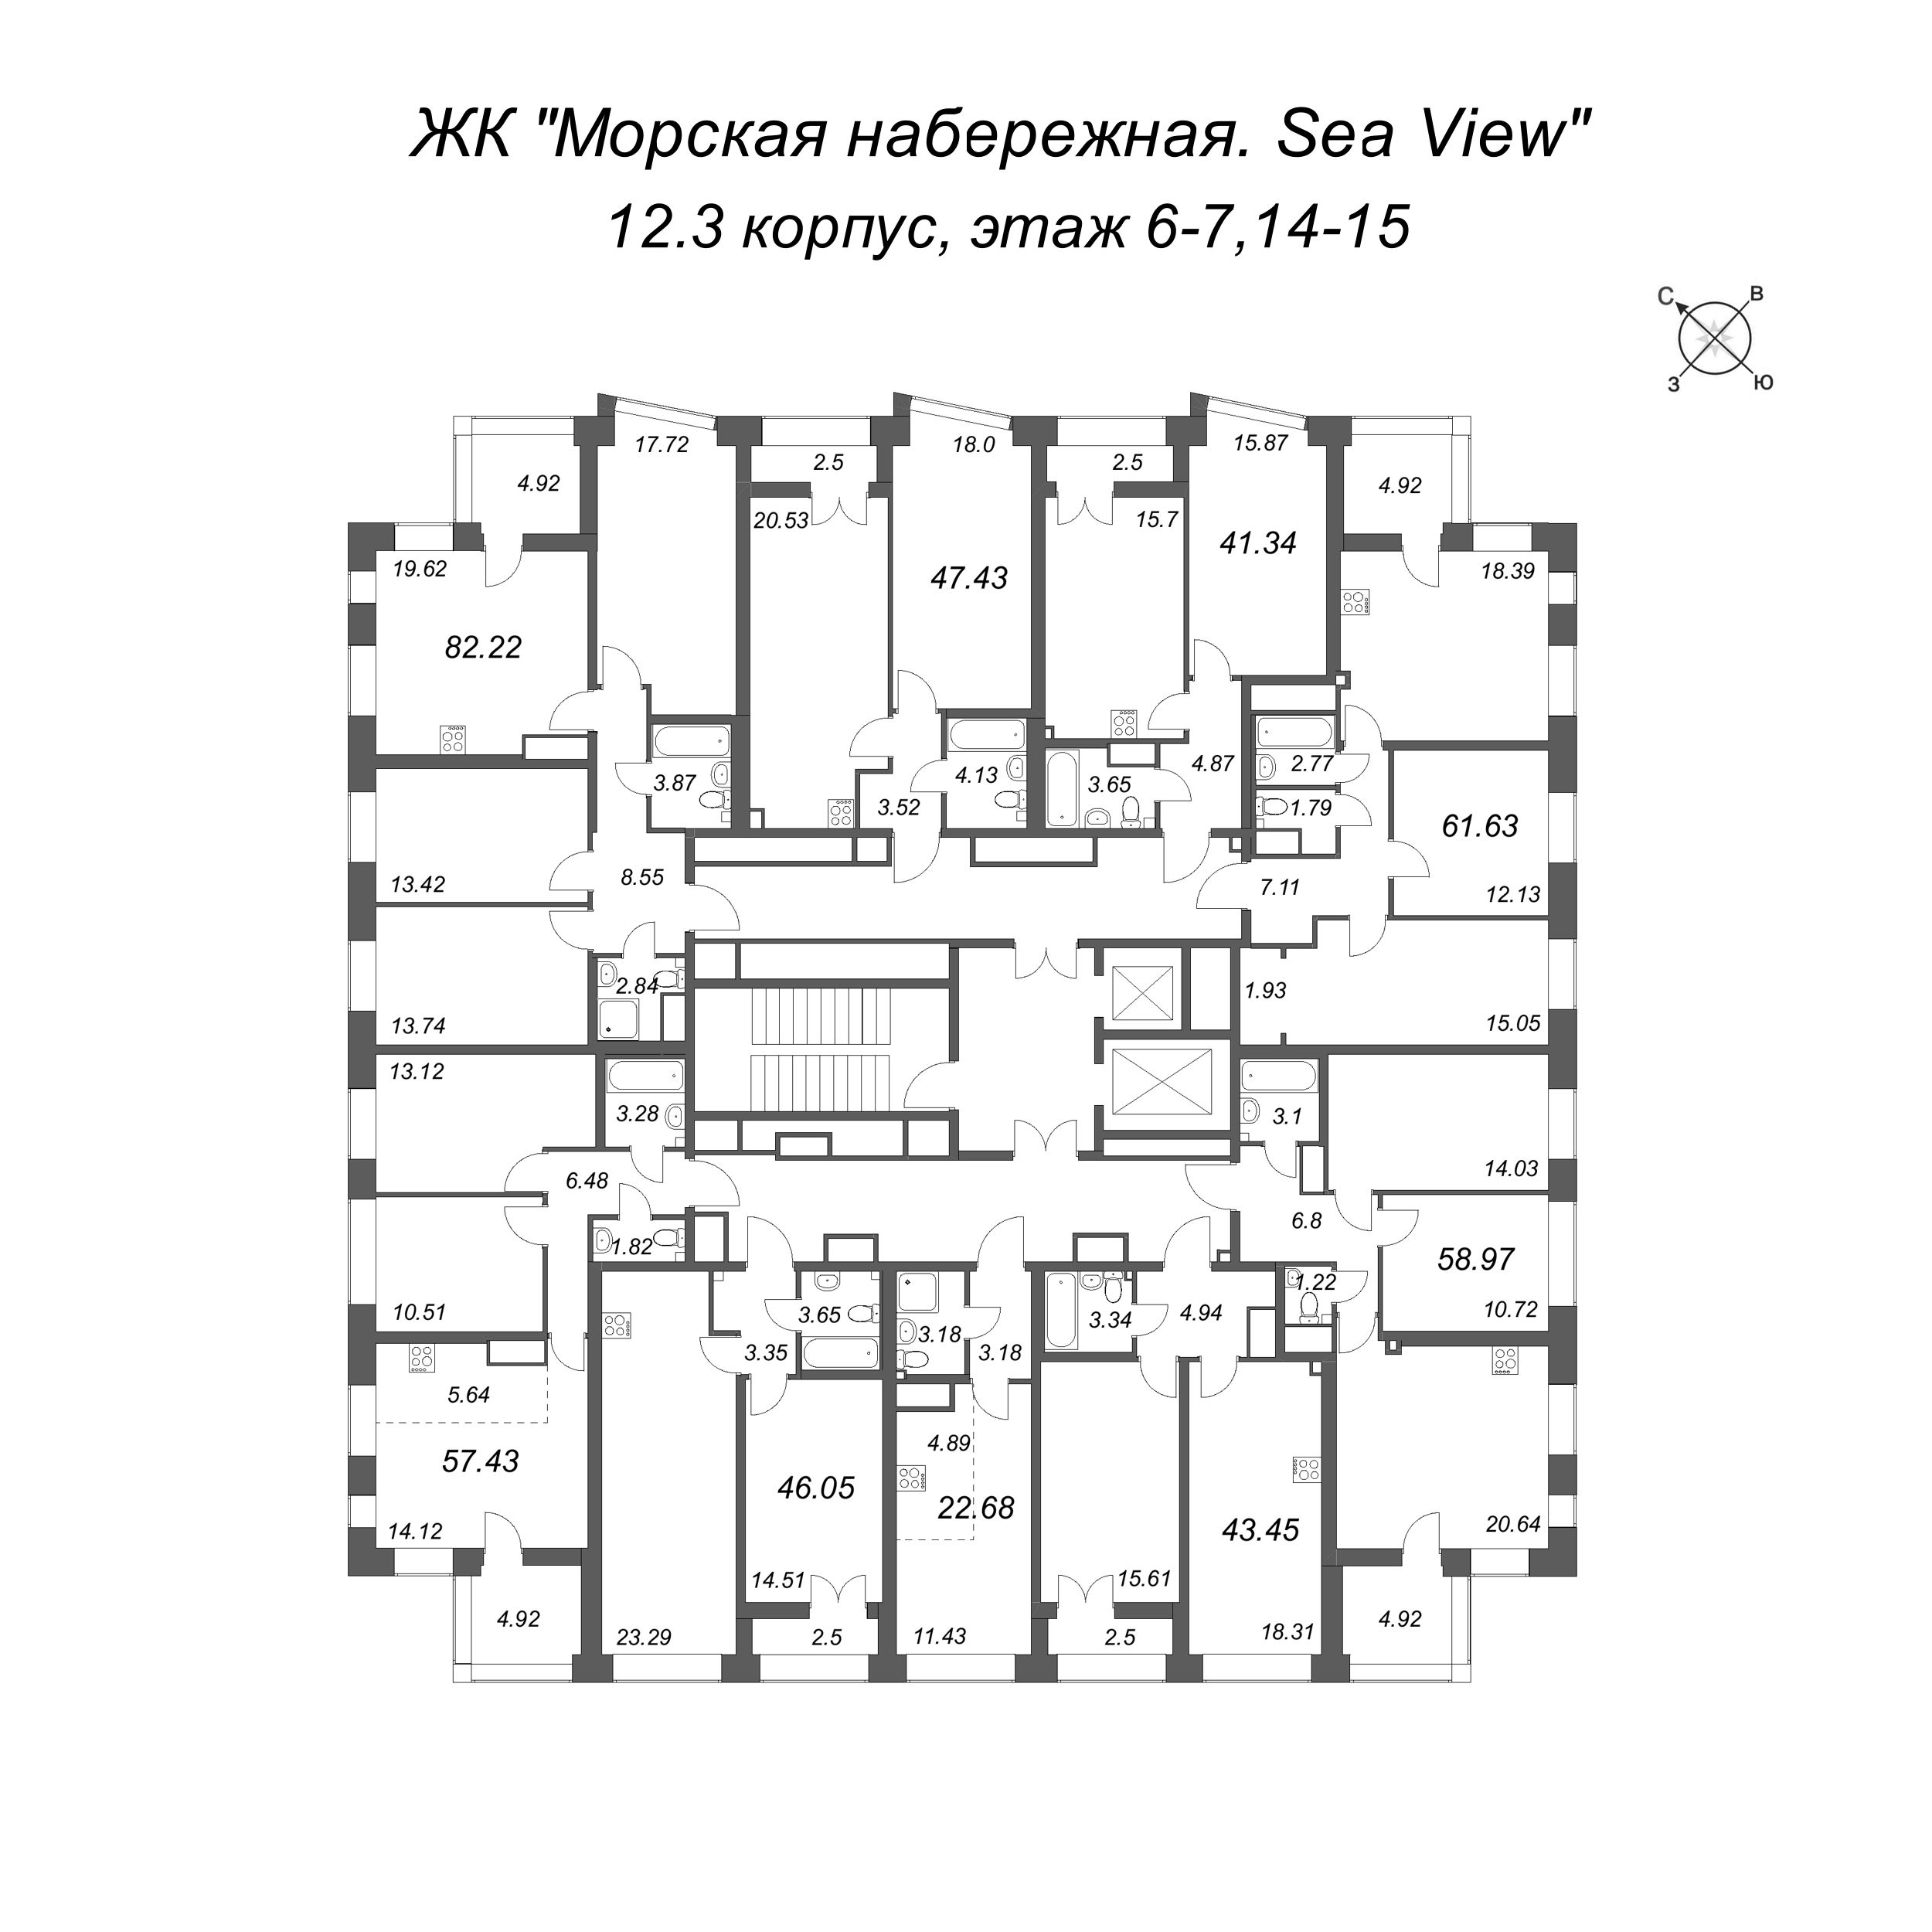 4-комнатная (Евро) квартира, 82.22 м² в ЖК "Морская набережная. SeaView" - планировка этажа